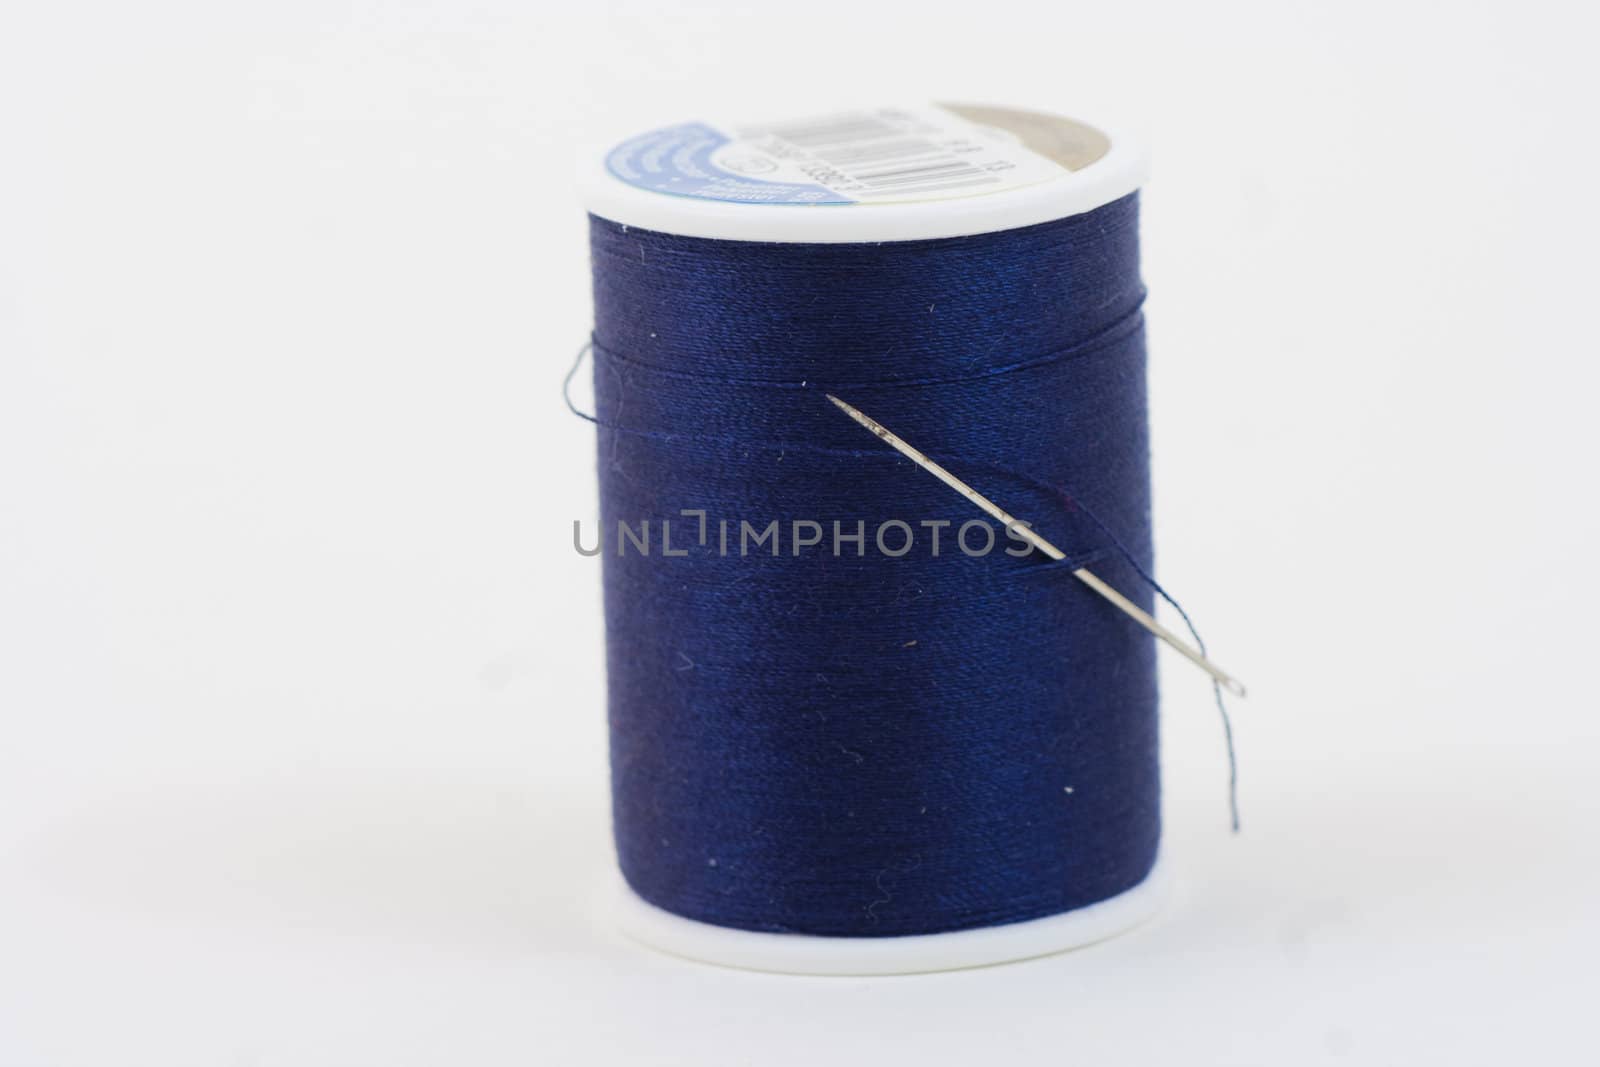 A single bolt of thread blue